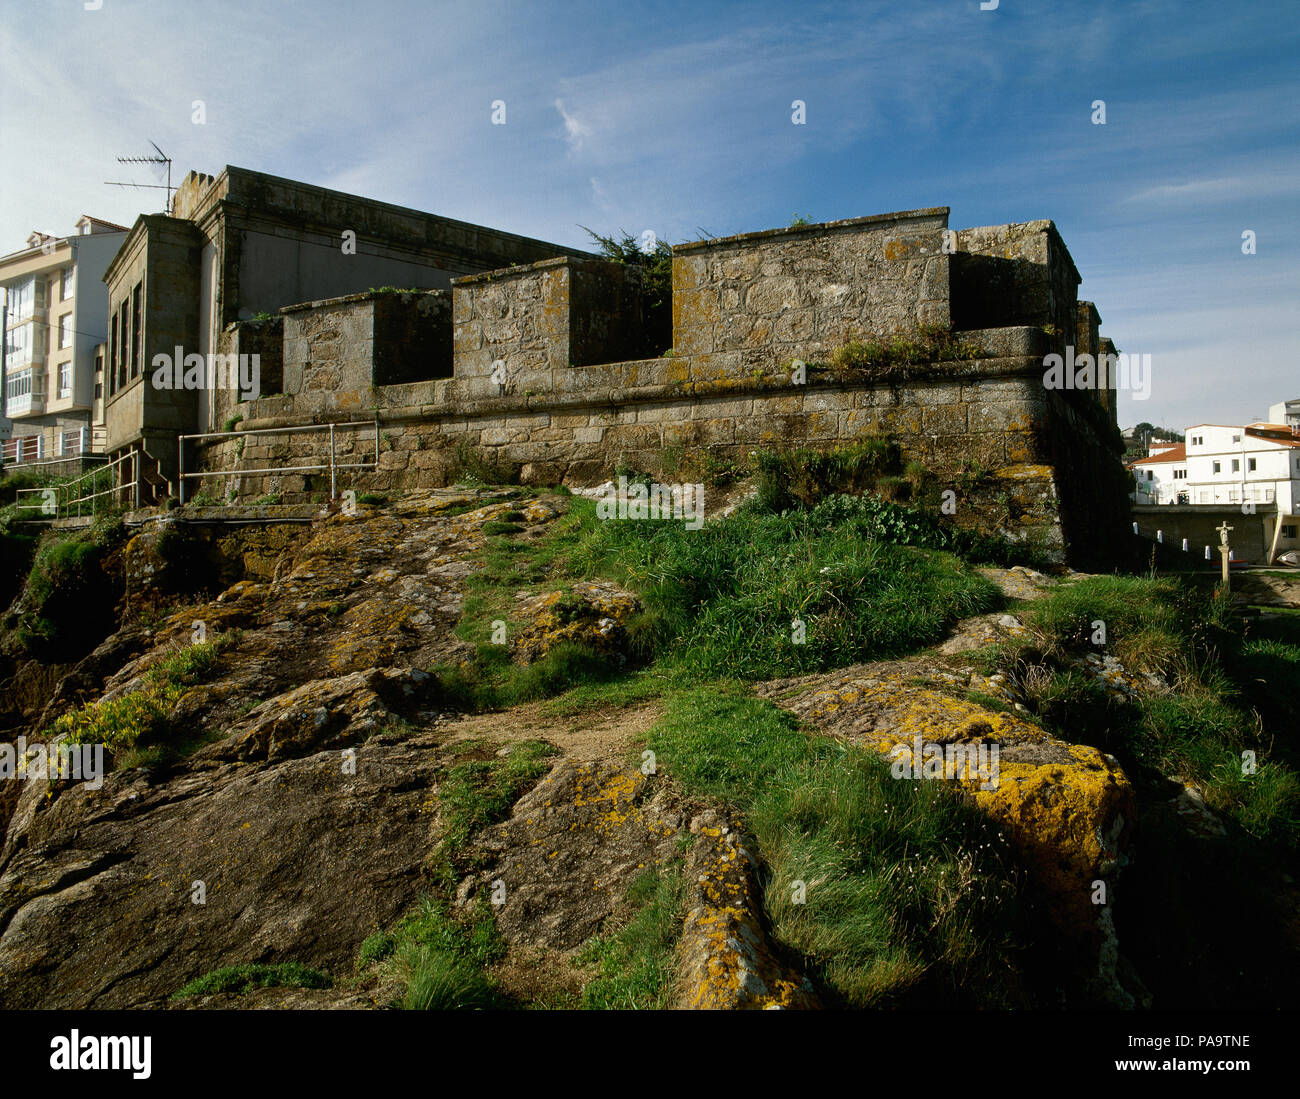 Spagna, Galizia, La Coruña provincia Fisterra (Finisterre). Saint Charles Castello. Fortificazione costruita durante il regno di Carlo III di Spagna, per difendere la costa da attacchi inglese del XVIII secolo. Costa della morte. Foto Stock